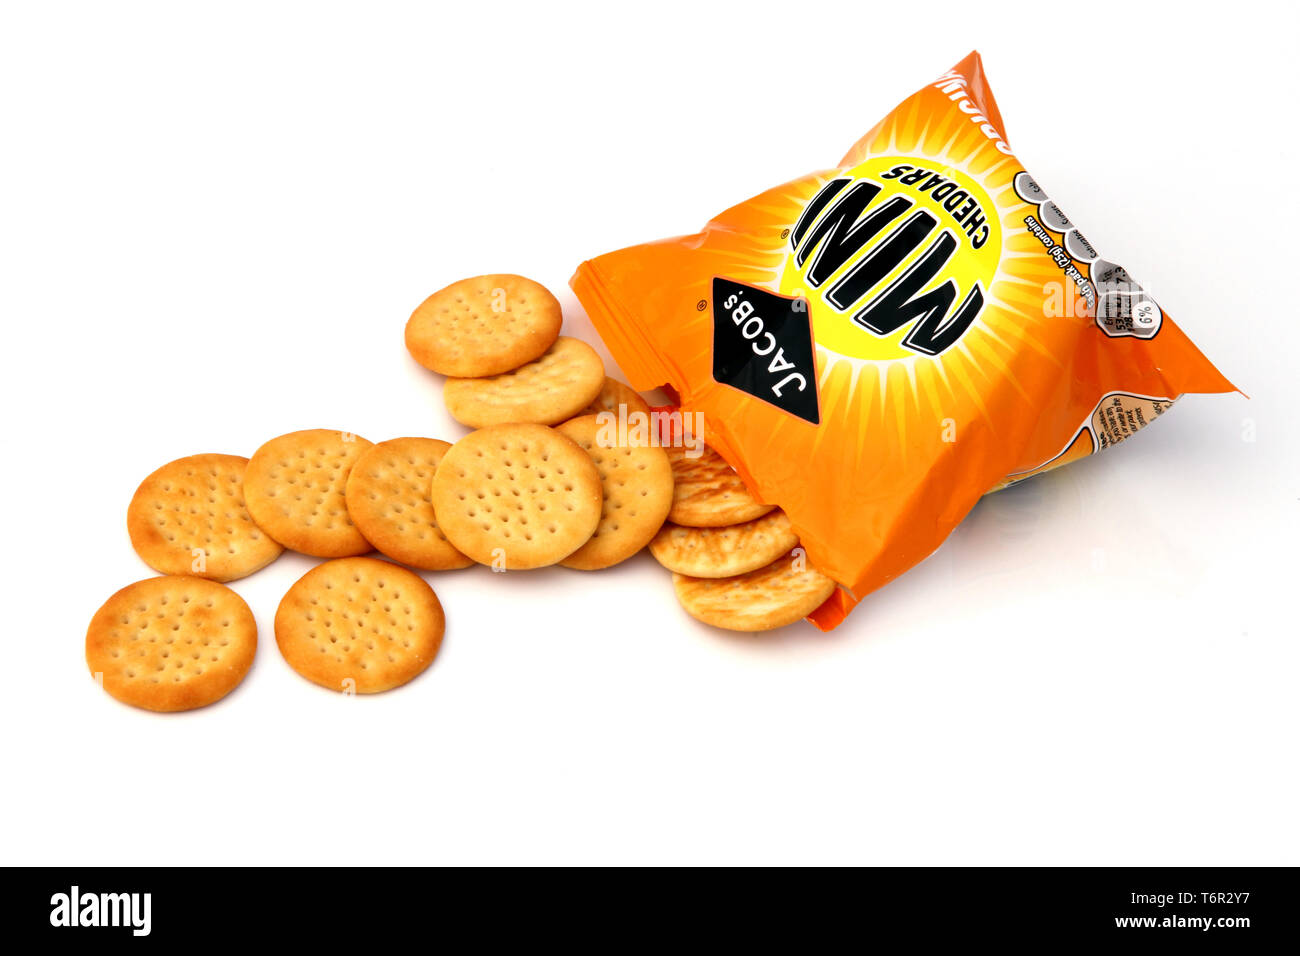 Ouvrir le sachet de Jacobs Mini Cheddars avec des biscuits tomber sur fond blanc Banque D'Images